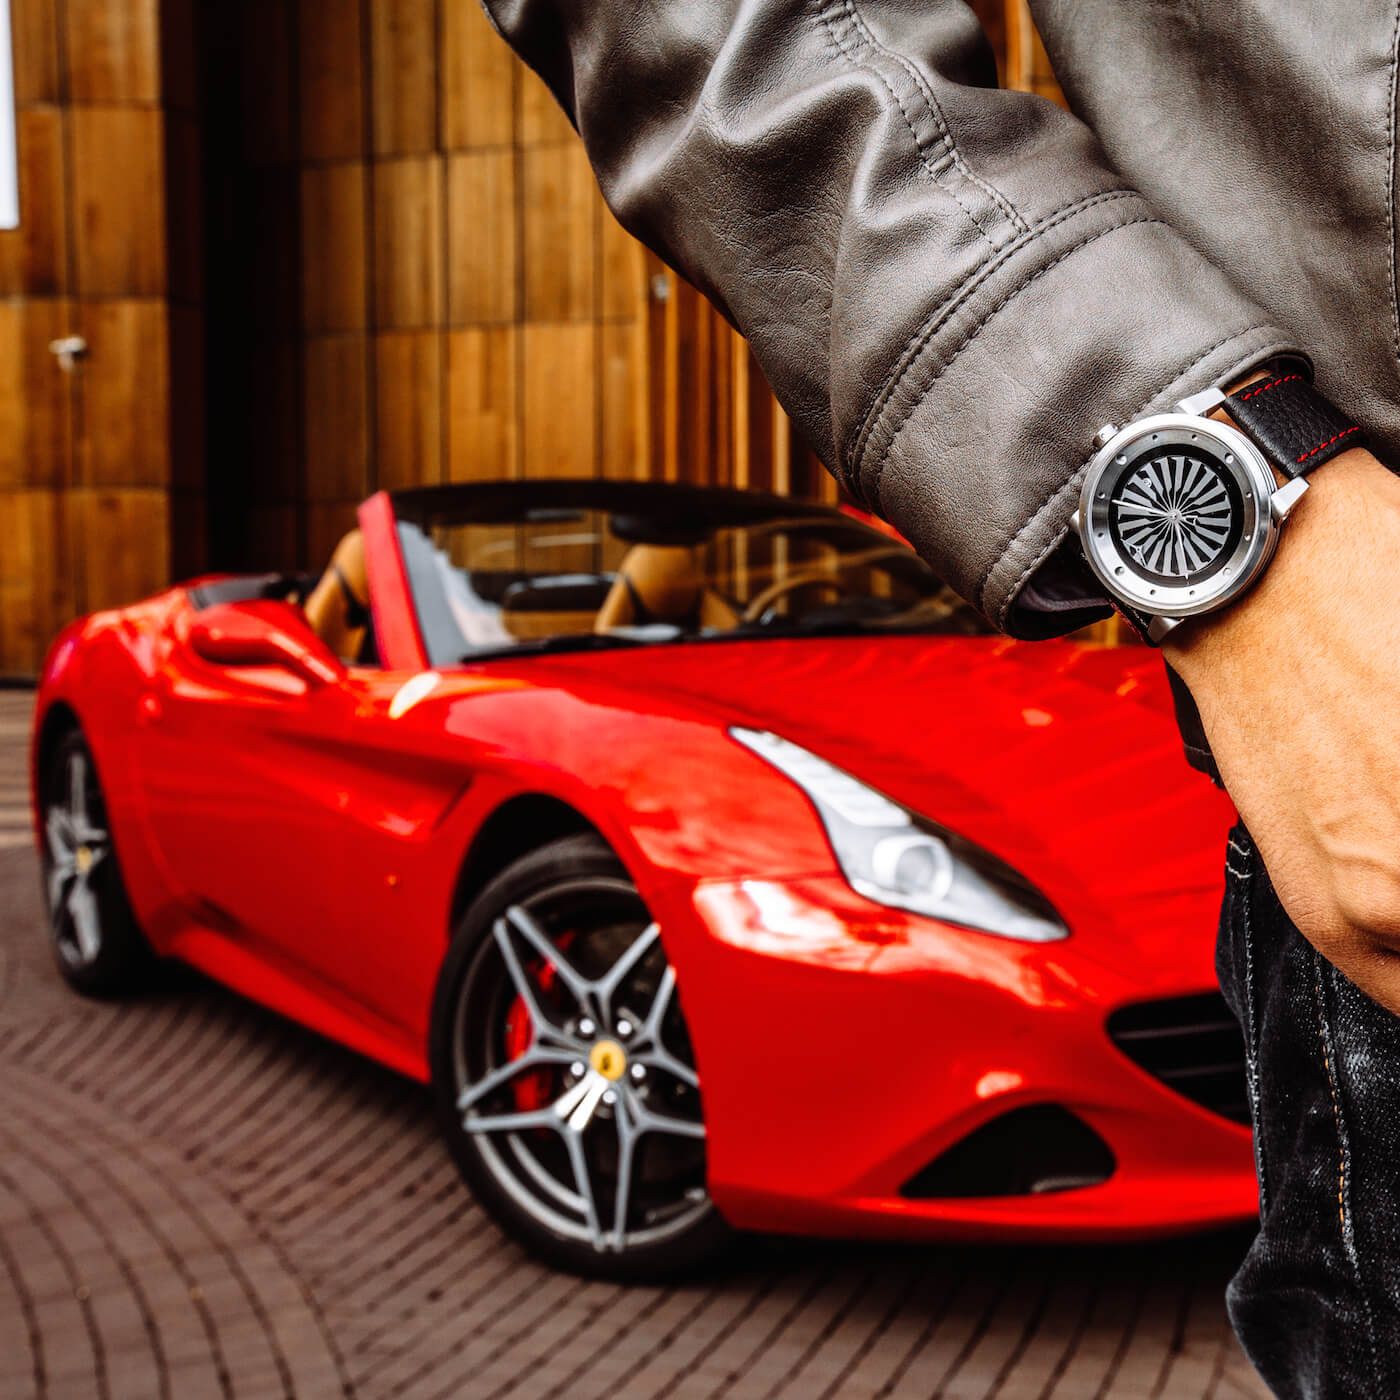 ZINVO Blade Ferrari Watches